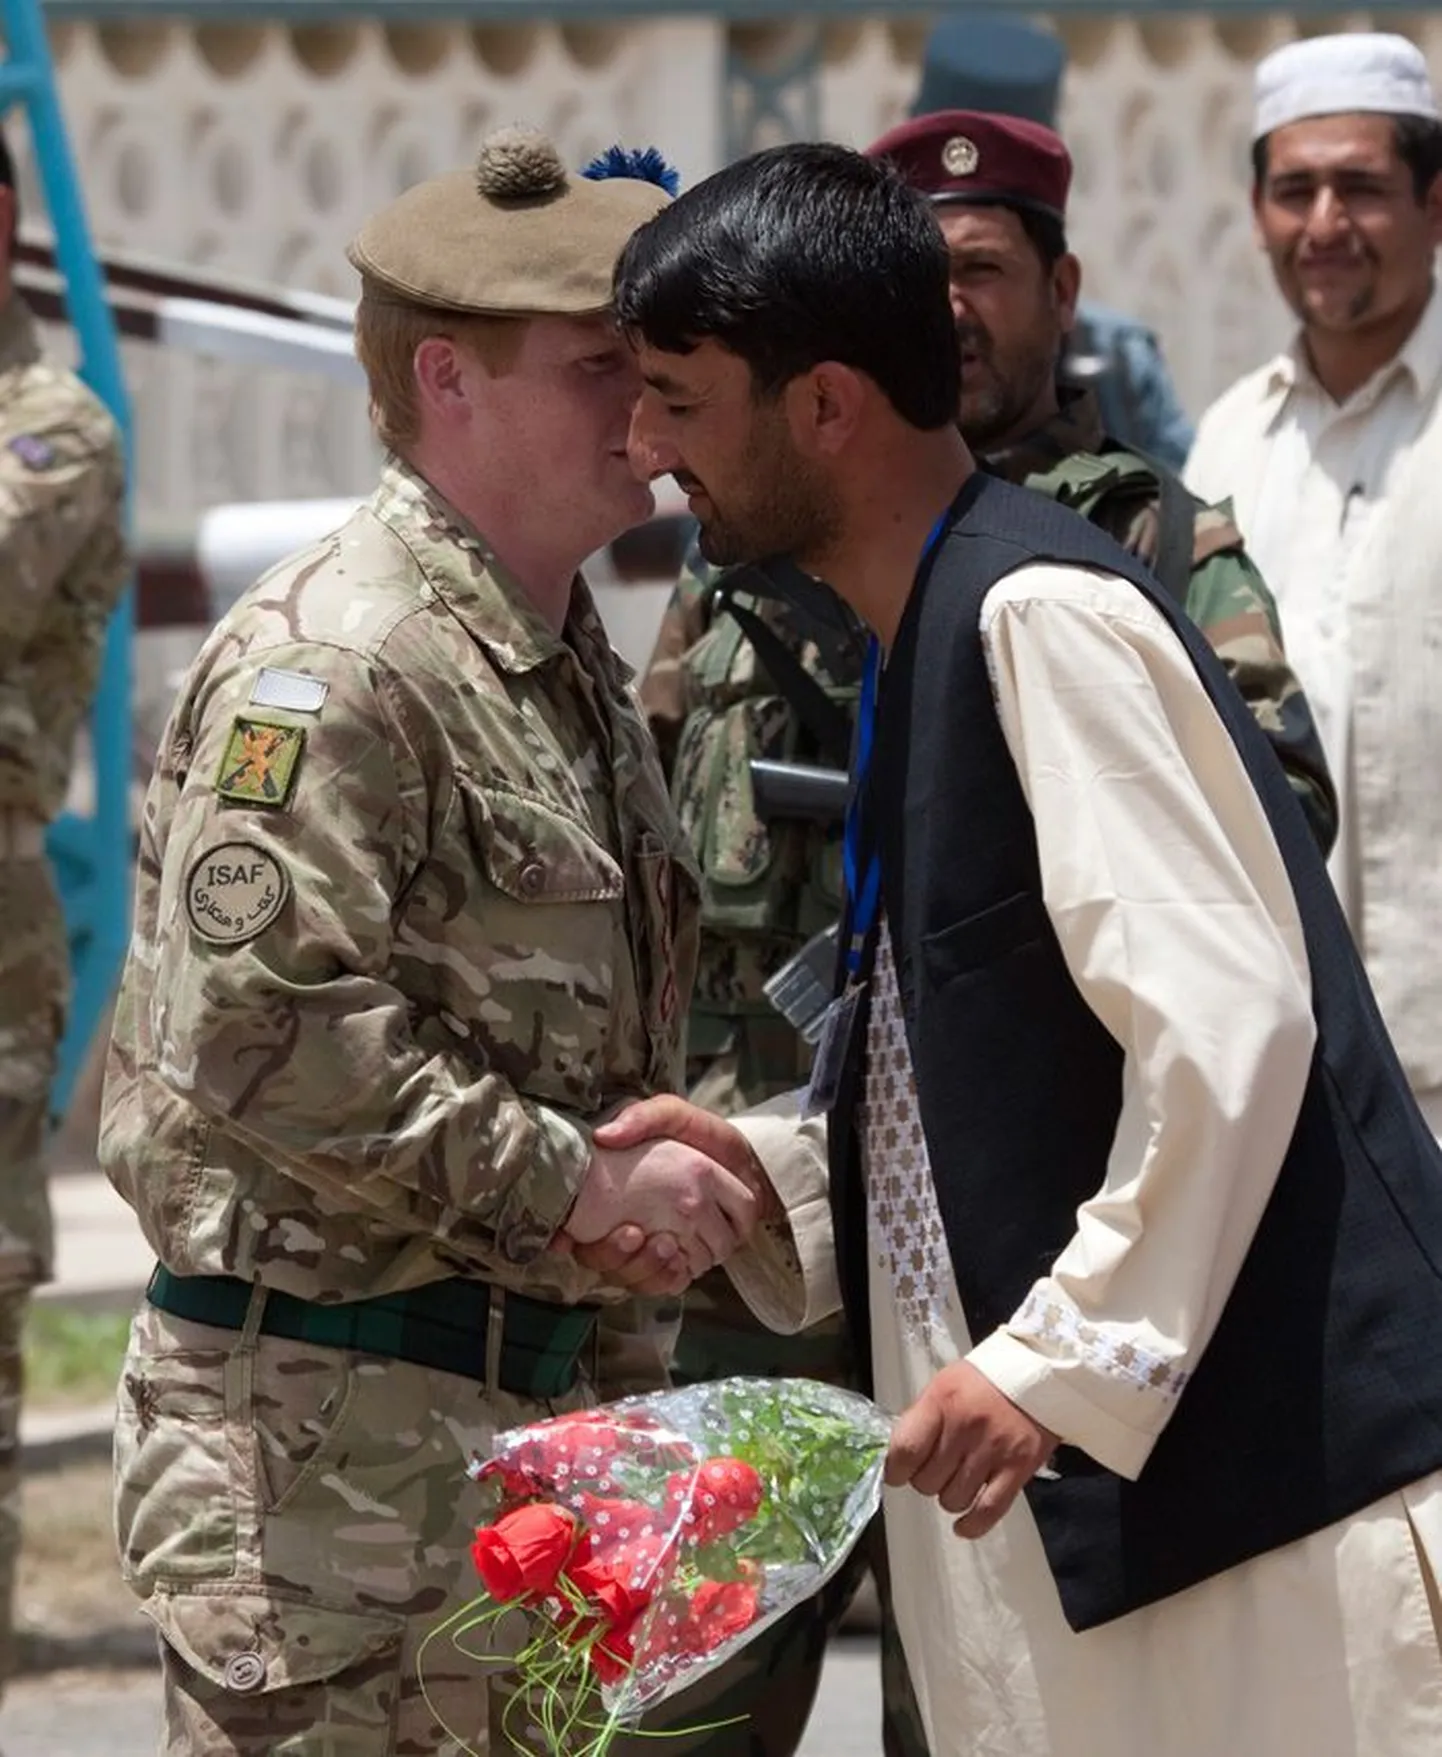 Afgaani ametnikud kinkisid eilse lahkumistseremoonia puhul Briti sõdureile roose.